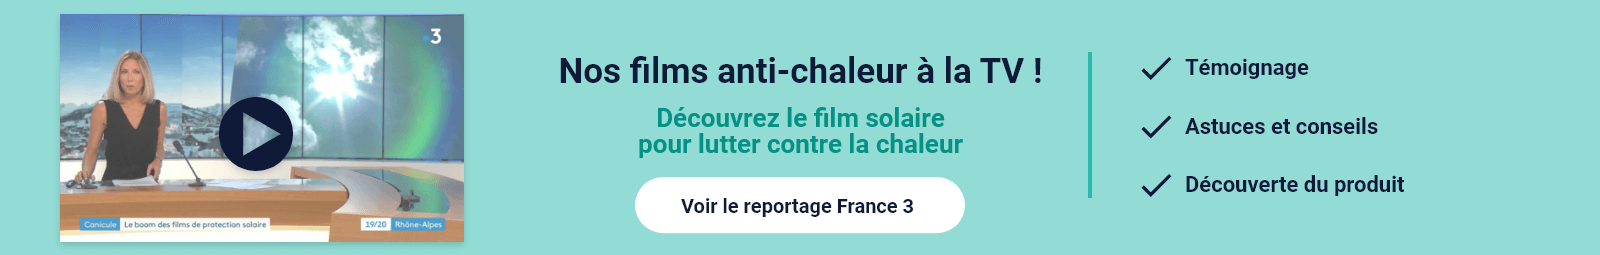 Reportage France 3 : Film anti-chaleur